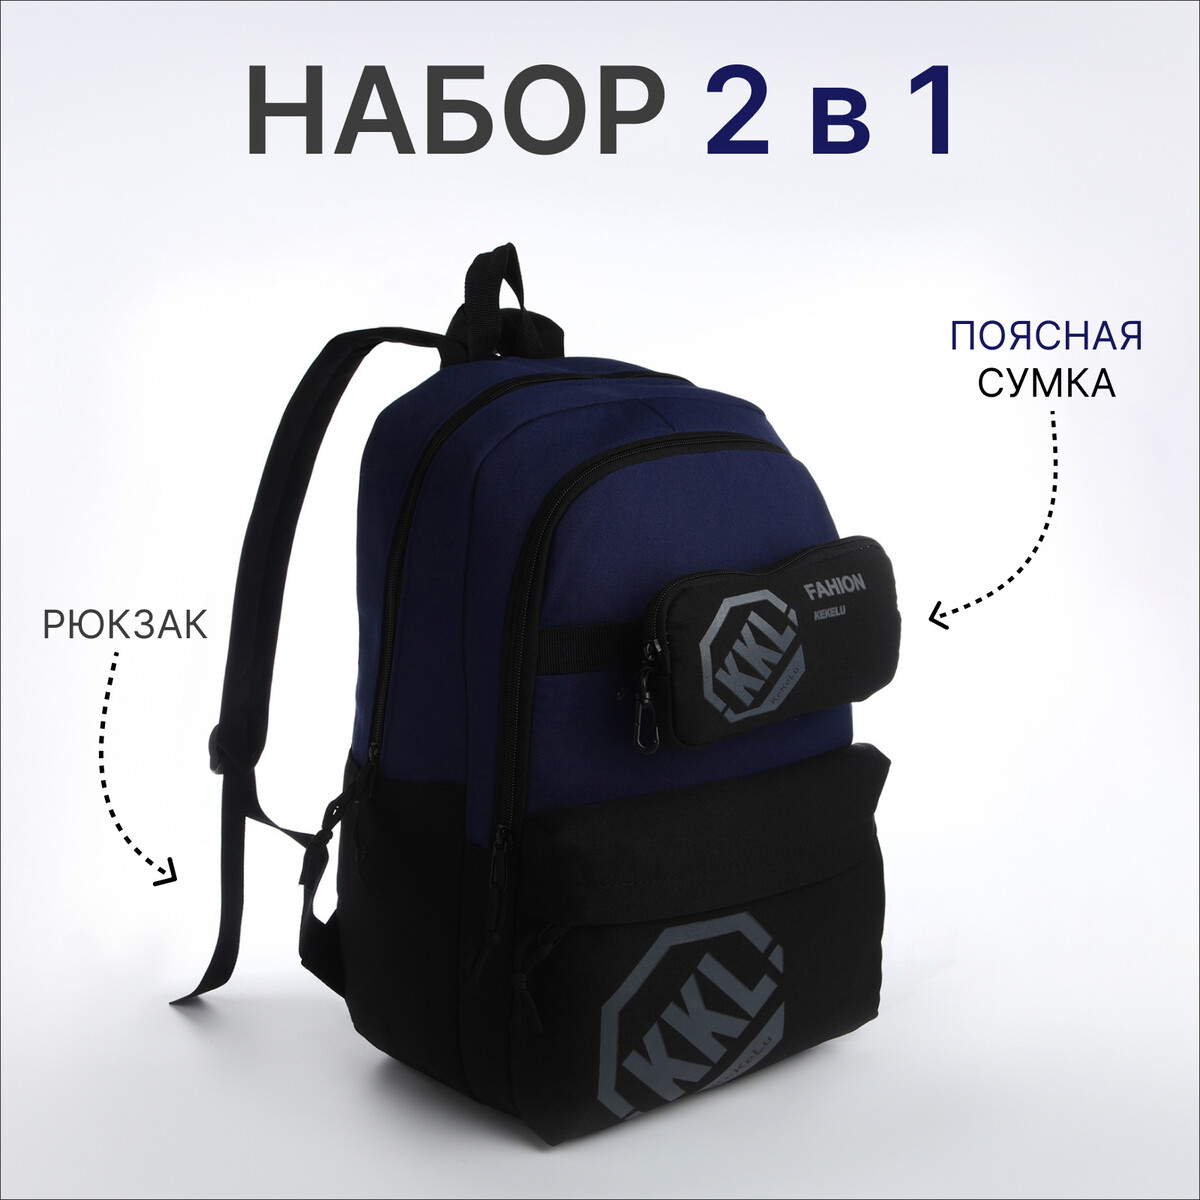 Рюкзак молодежный из текстиля на молнии, 3 кармана, сумка, держатель для чемодана, цвет черный/синий рюкзак молодежный на молнии из текстиля 4 кармана белый синий